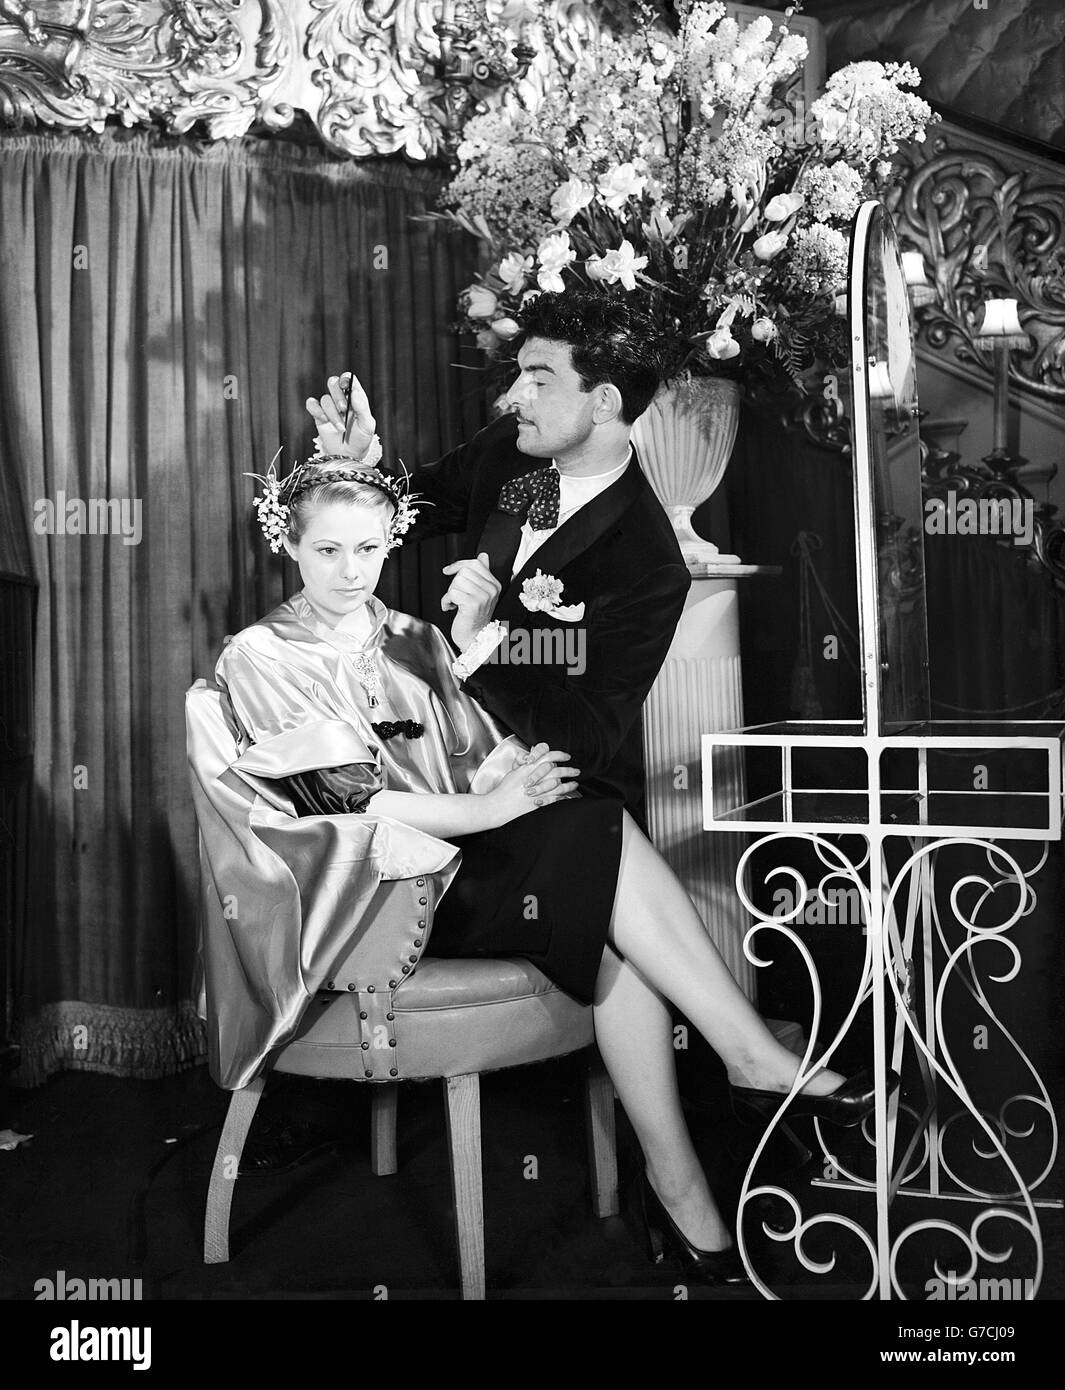 Raymond travaille avec détours sur une coiffure présentée dans sa coiffure de la parade de Pâques de 1951 à Care de Paris, Coventry Street, Londres. Il l'appelle « Parade de Pâques » et a manqué Stella CRIBE comme son modèle. Banque D'Images